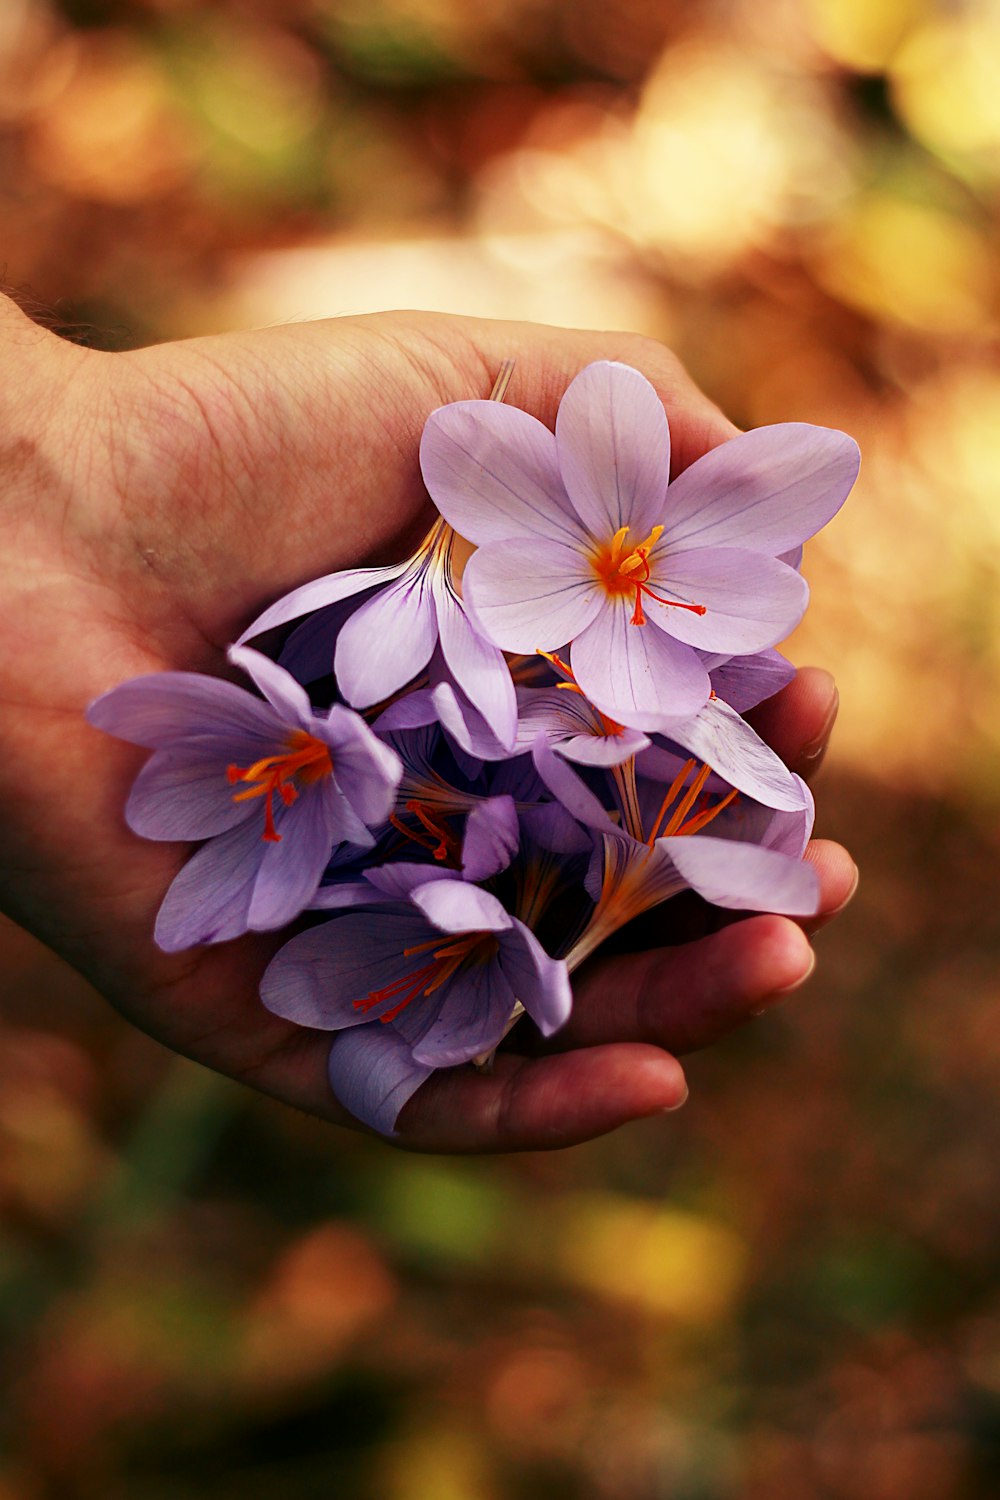 flores de pétalos púrpuras en la mano de la persona